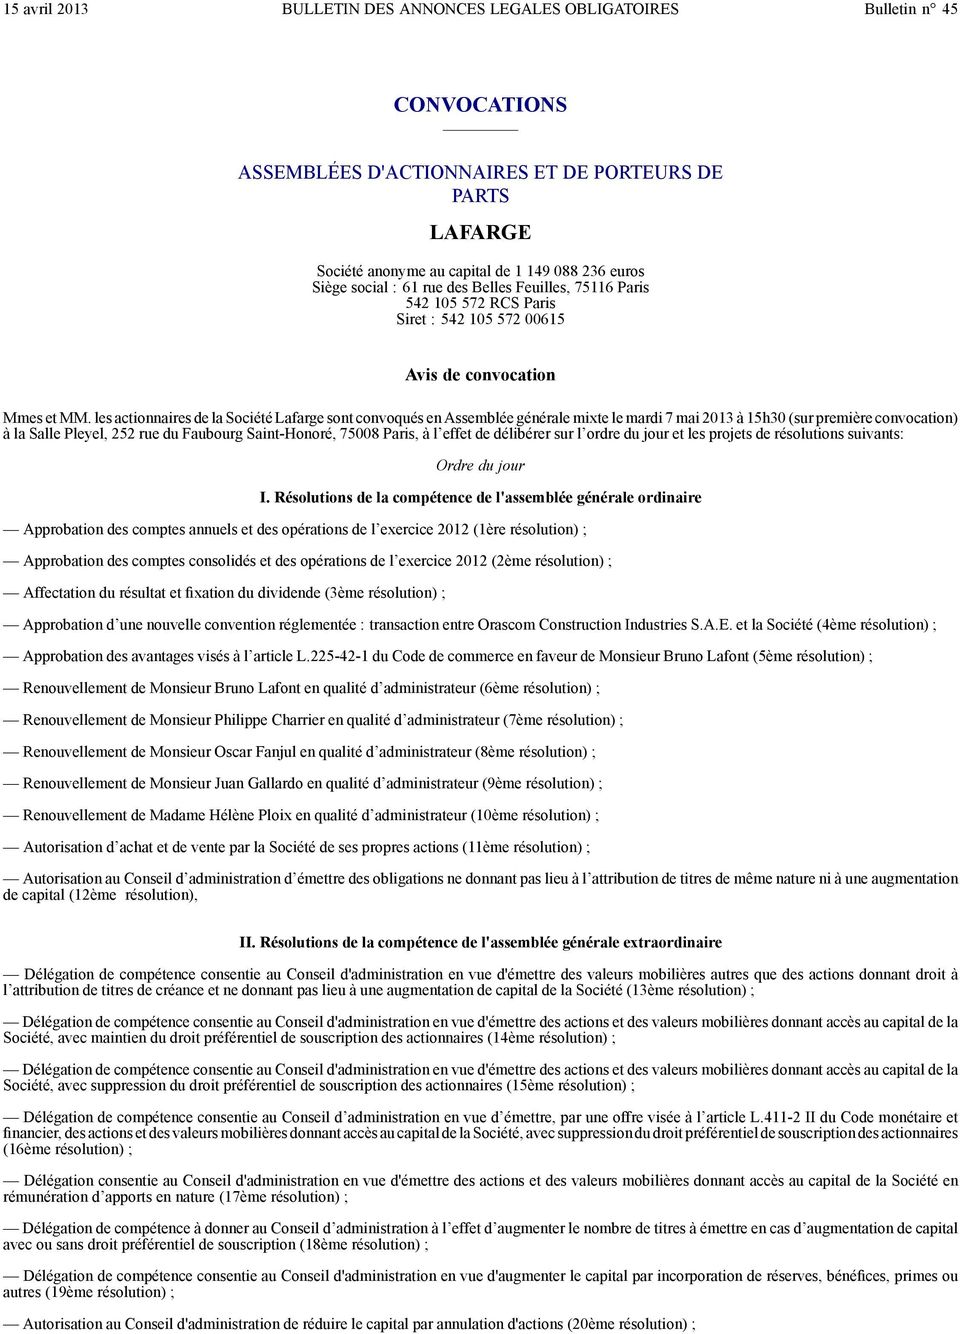 les actionnaires de la Société Lafarge sont convoqués en Assemblée générale mixte le mardi 7 mai 2013 à 15h30 (sur première convocation) à la Salle Pleyel, 252 rue du Faubourg Saint-Honoré, 75008